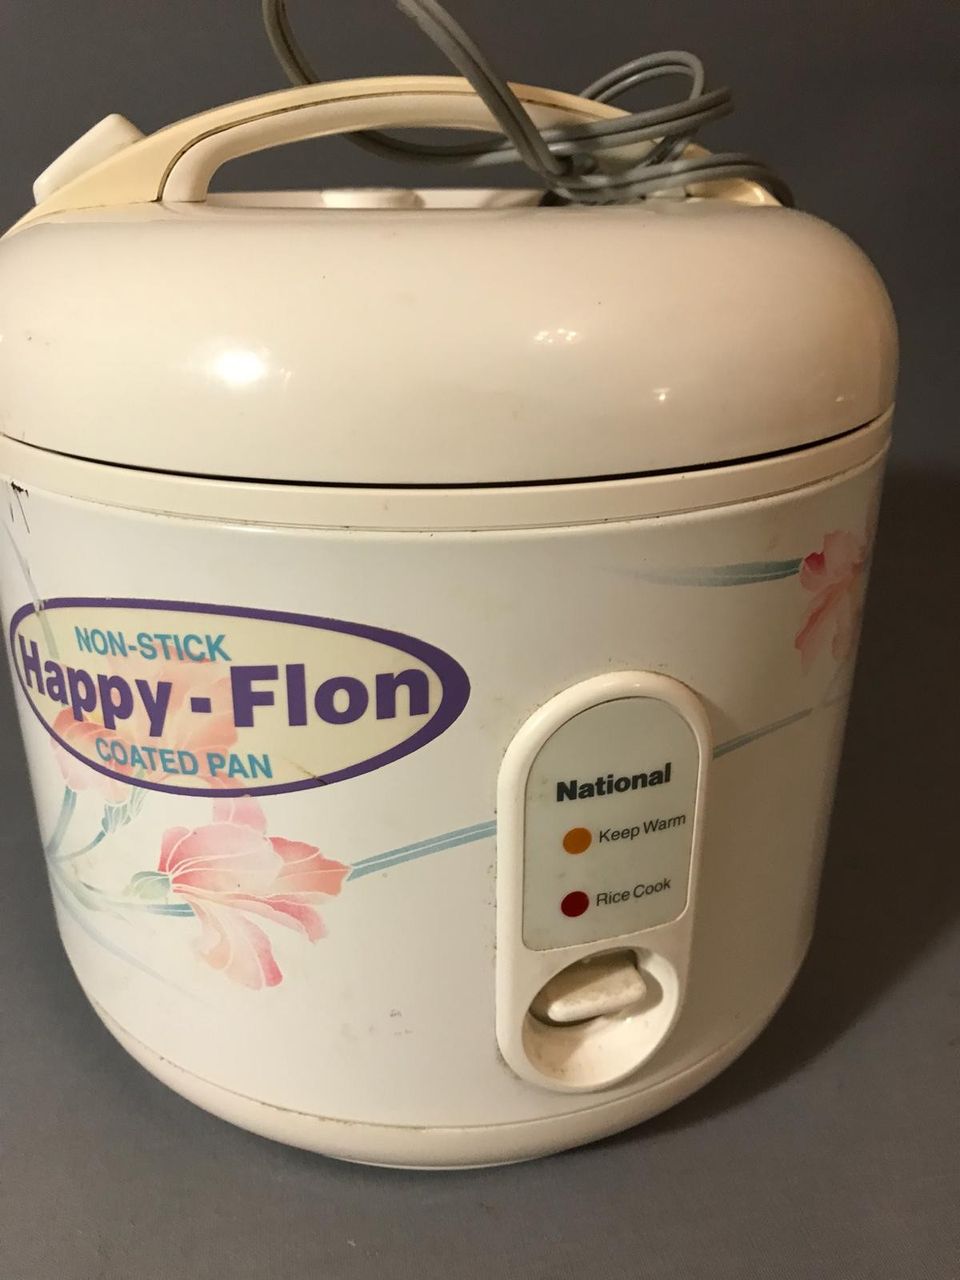 Happy-Flon riisinkeitin